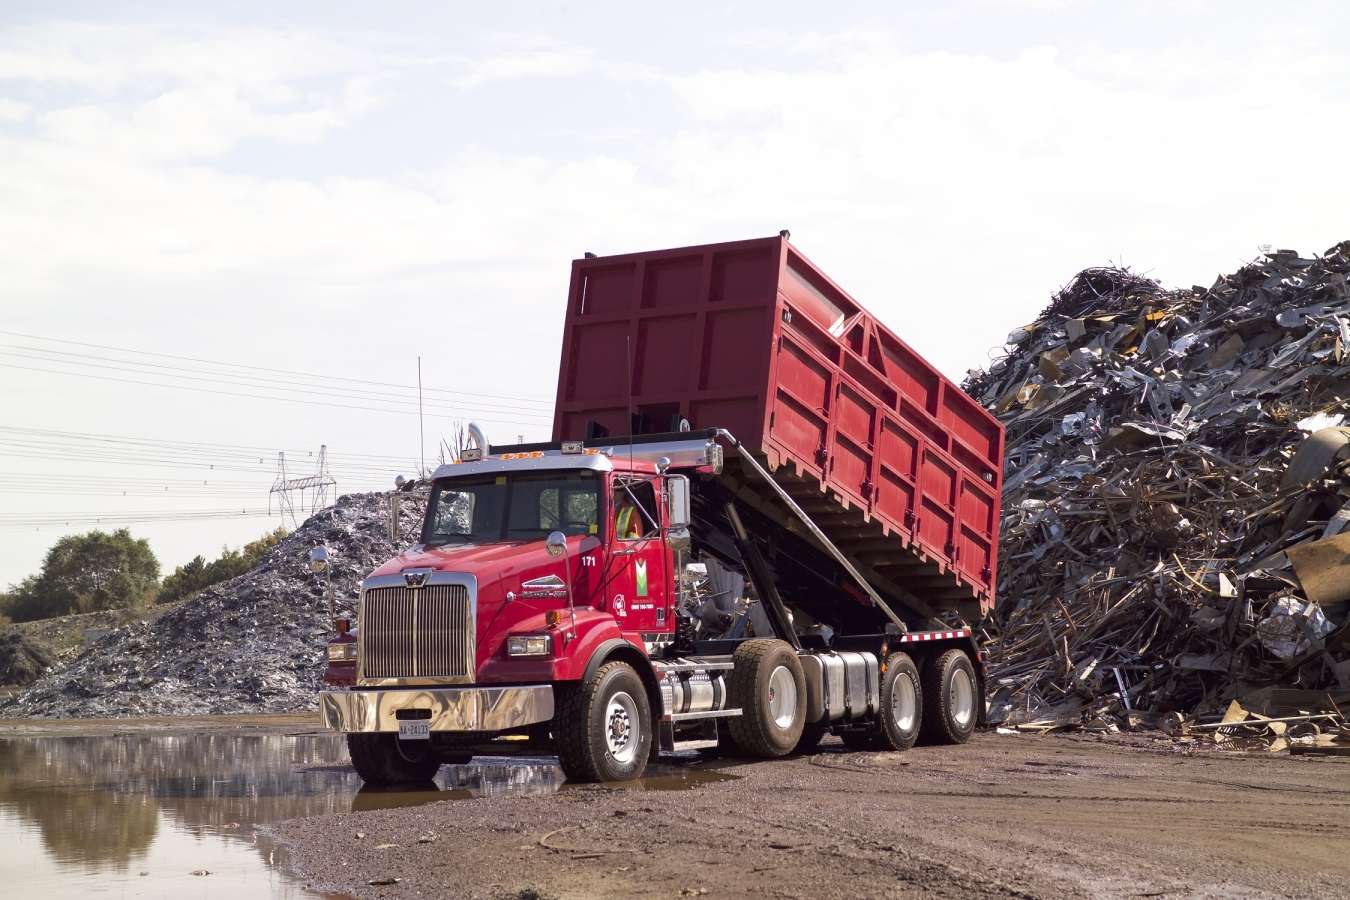 Bin truck roll offs to unload scrap metal